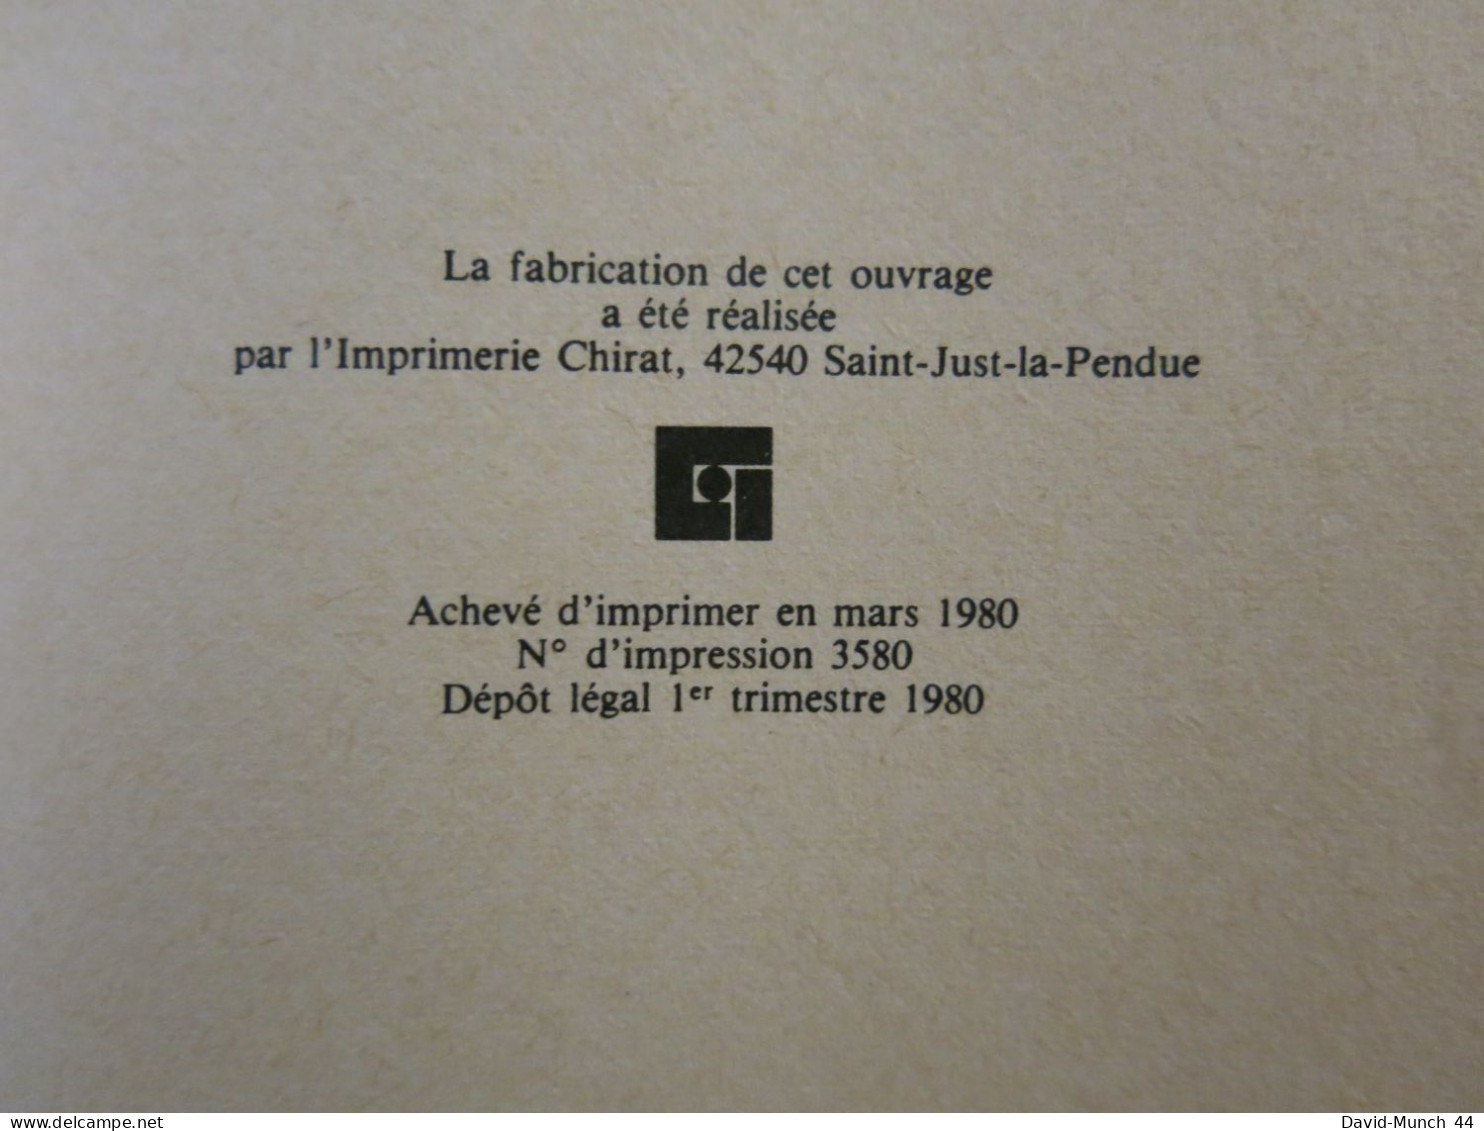 Benoit Misère de Léo Ferré. Editions Plasma, Paris. 1980